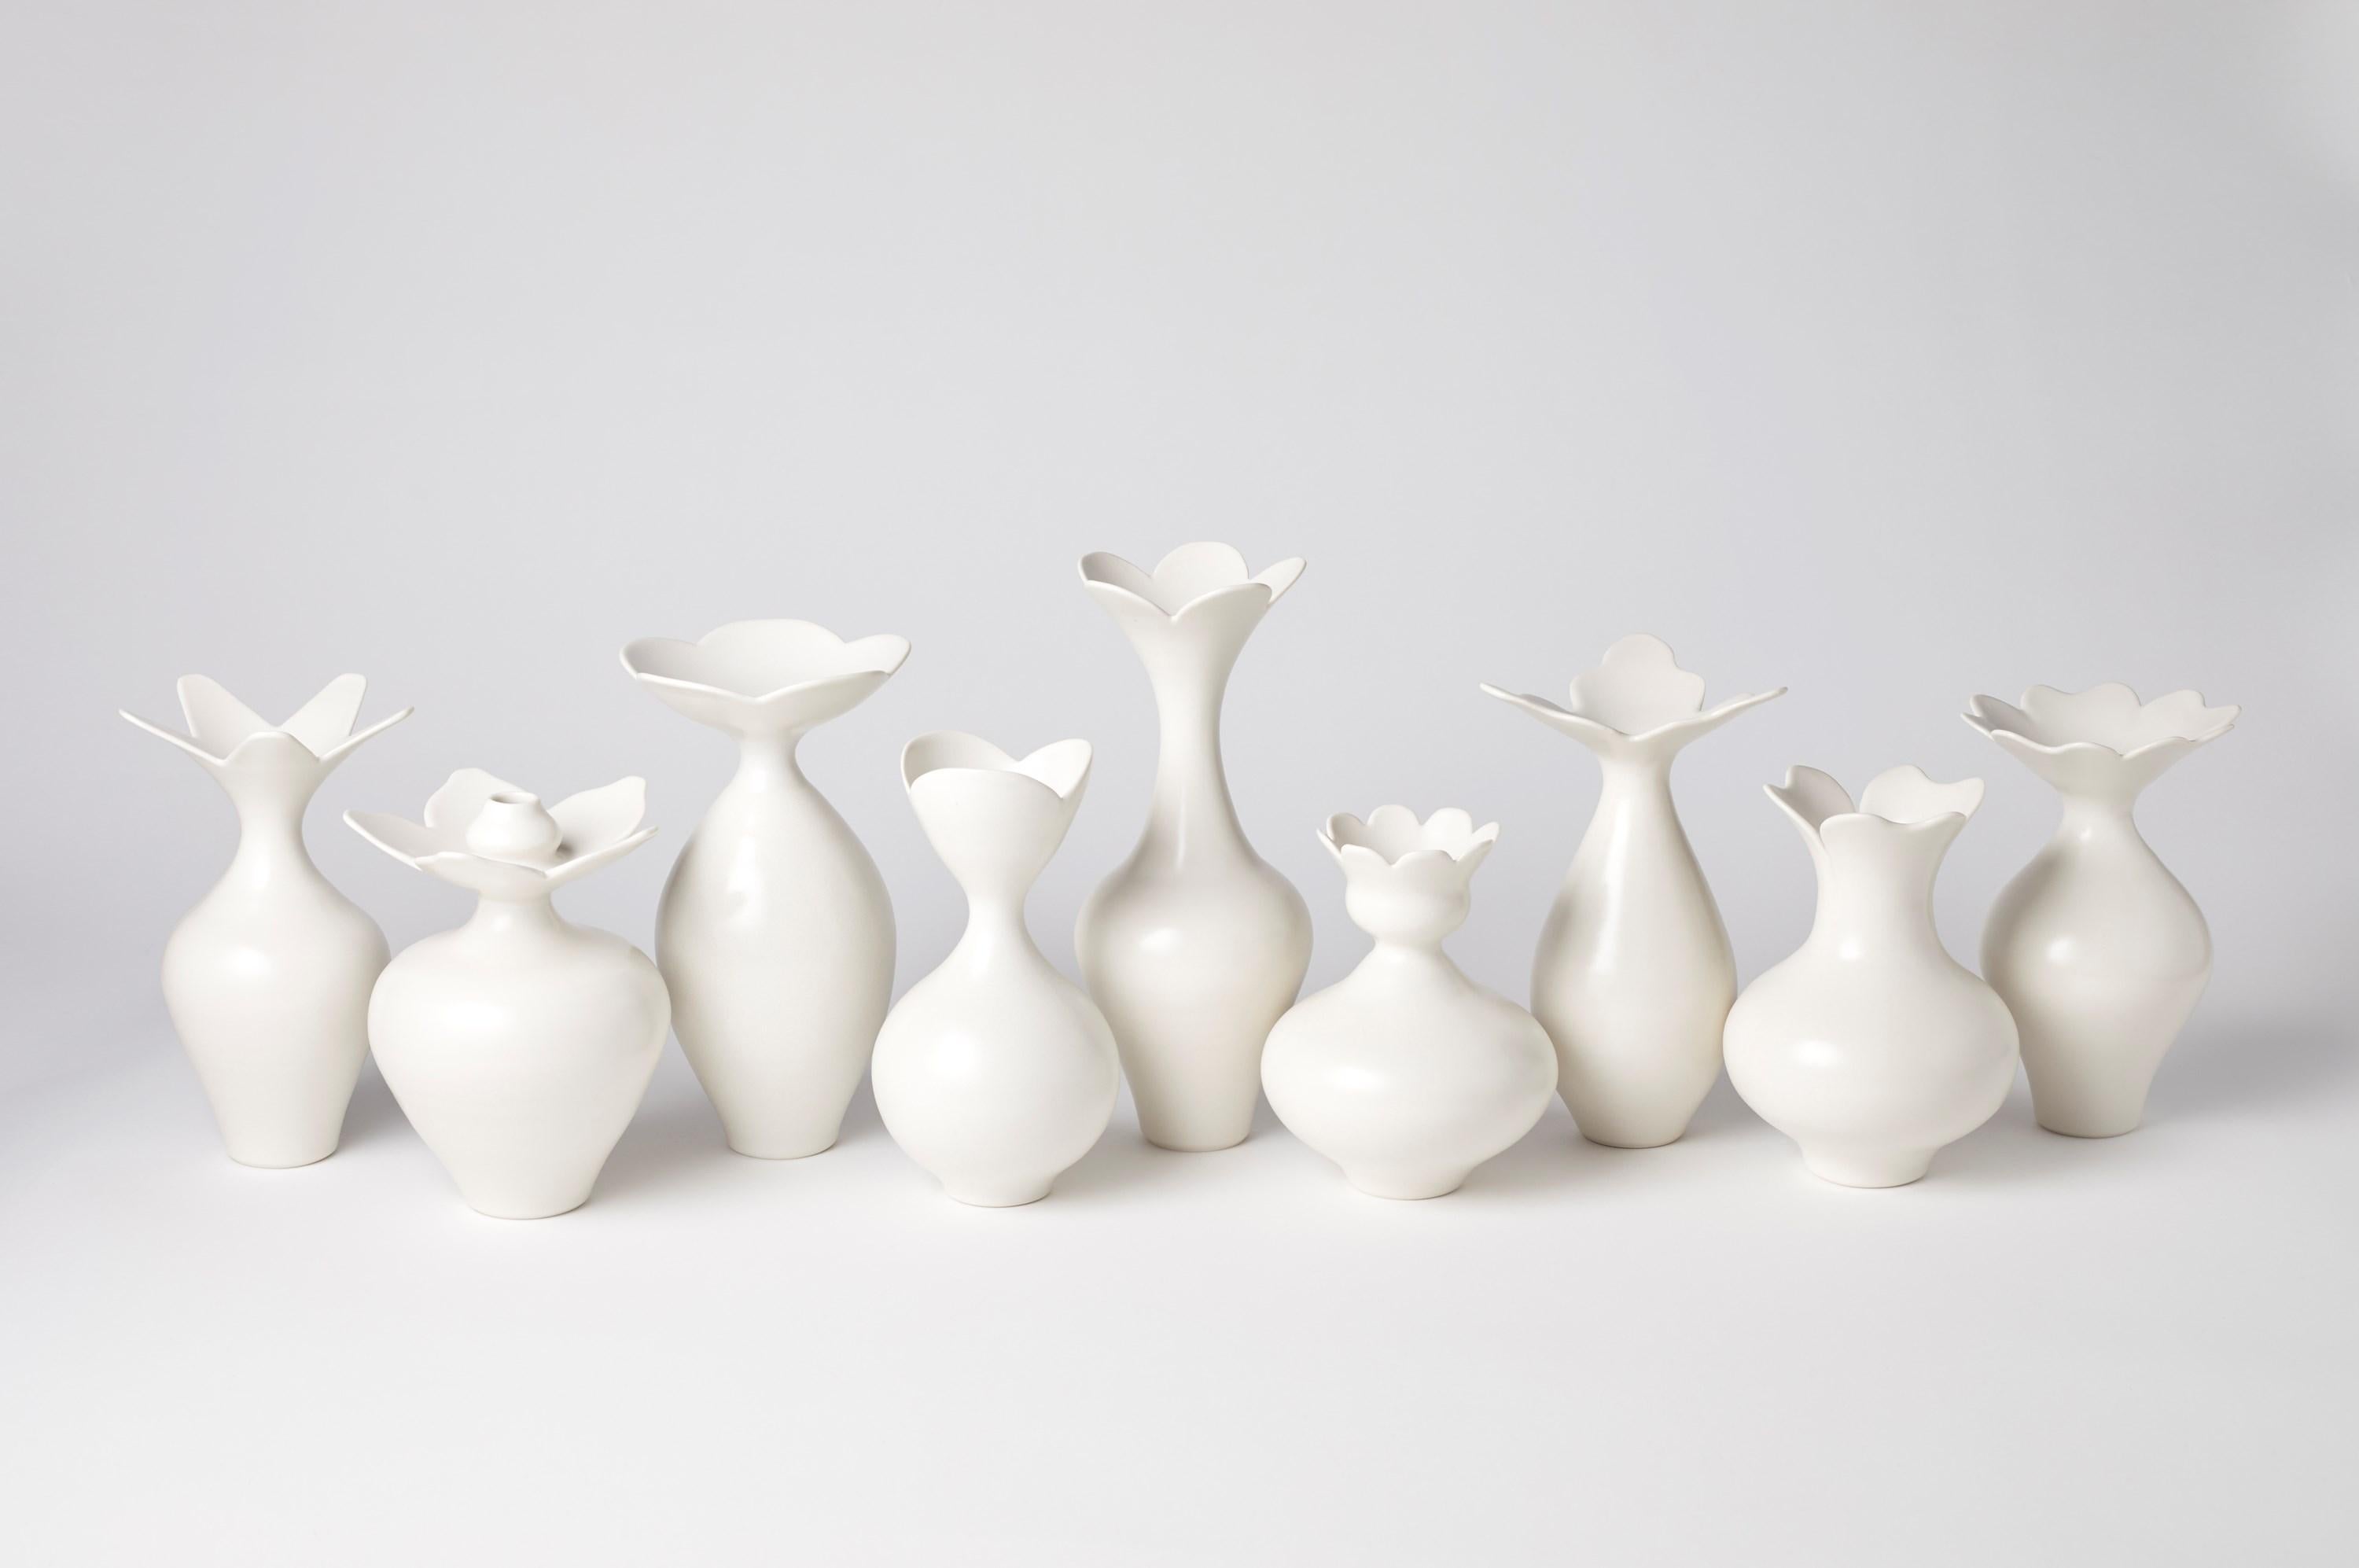 British Vase with Daisy Rim, a unique white porcelain vase by Vivienne Foley